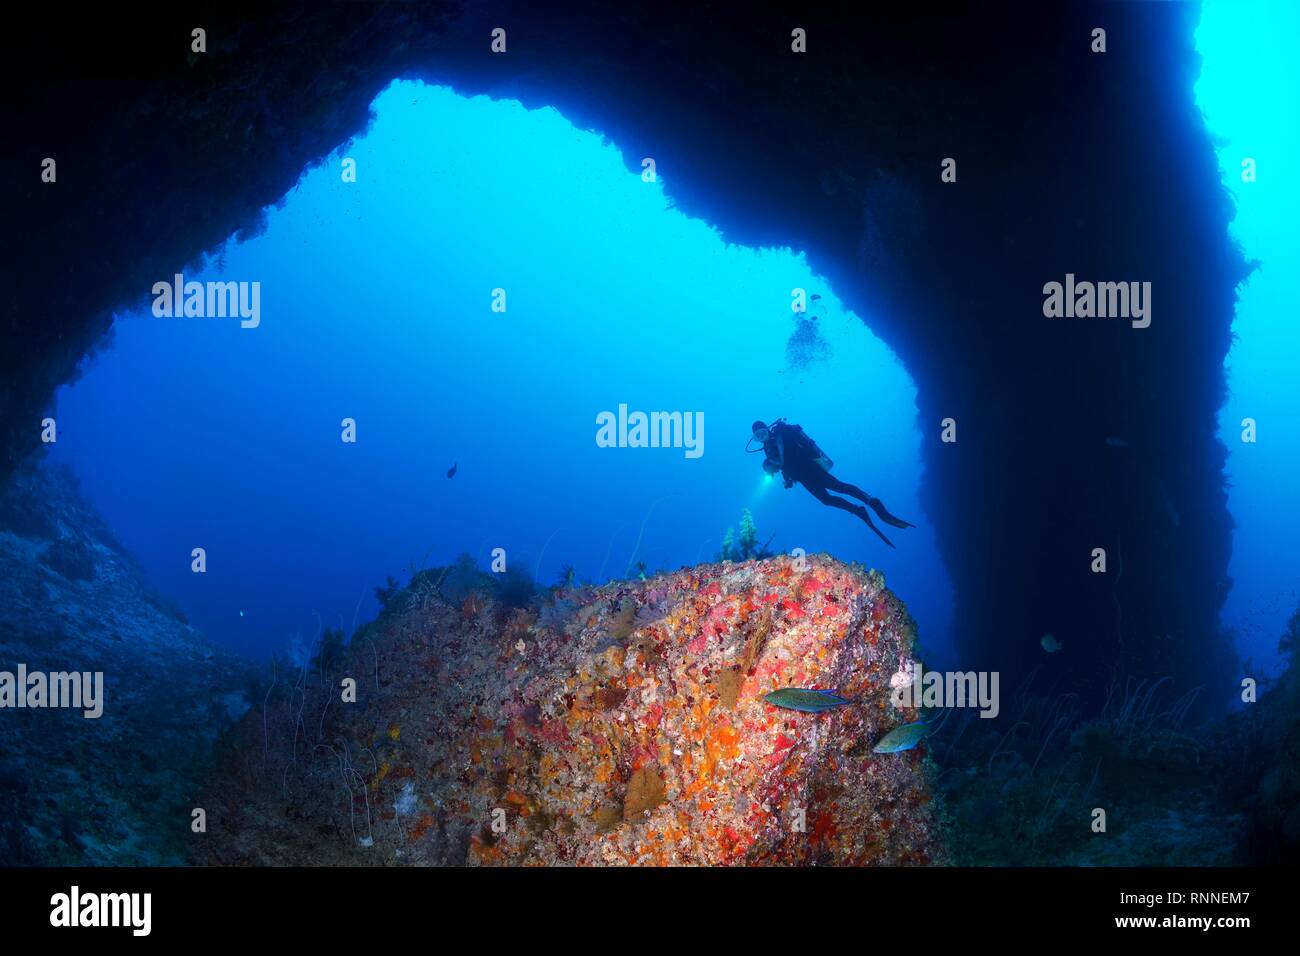 Taucher sieht im Reef formation bekannt als Sarkophag in Torbogen aus dem Süden Hochebene von Elphinstone Riff, Rotes Meer, Ägypten Stockfoto